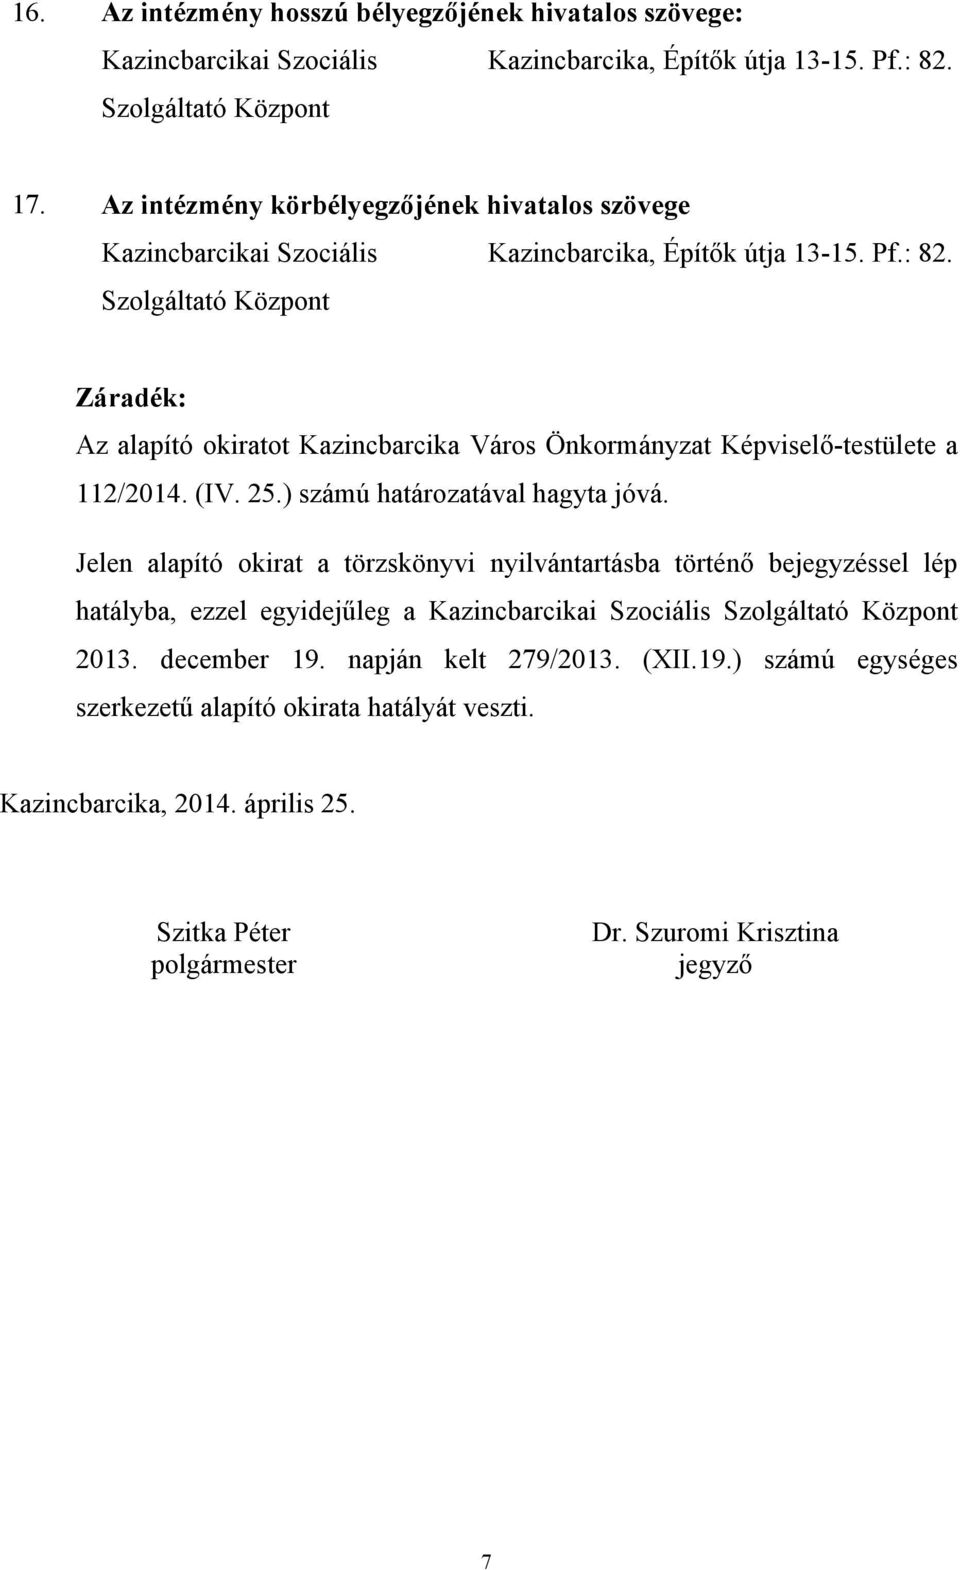 Szolgáltató Központ Záradék: Az alapító okiratot Kazincbarcika Város Önkormányzat Képviselő-testülete a 112/2014. (IV. 25.) számú határozatával hagyta jóvá.